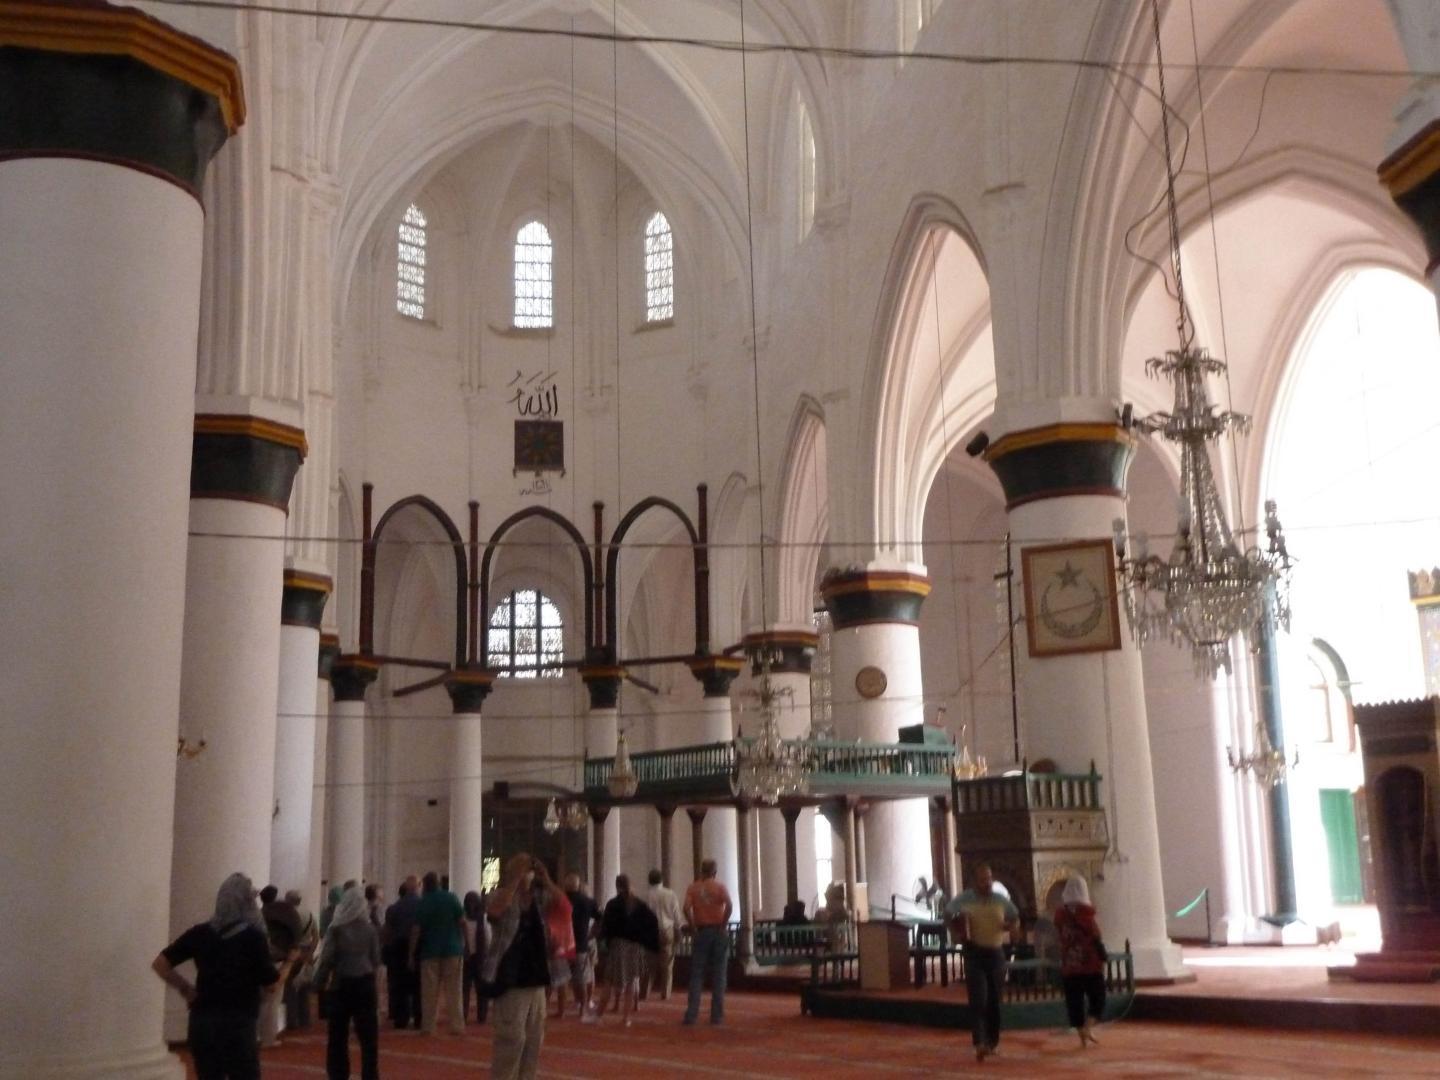 Biserica Agia Sofia, iniția ortodăxă, iar ulterior romano-catolică, tranformată în Moscheea Selimiye, cunoscut punct de agitație electorală pro-Erdogan